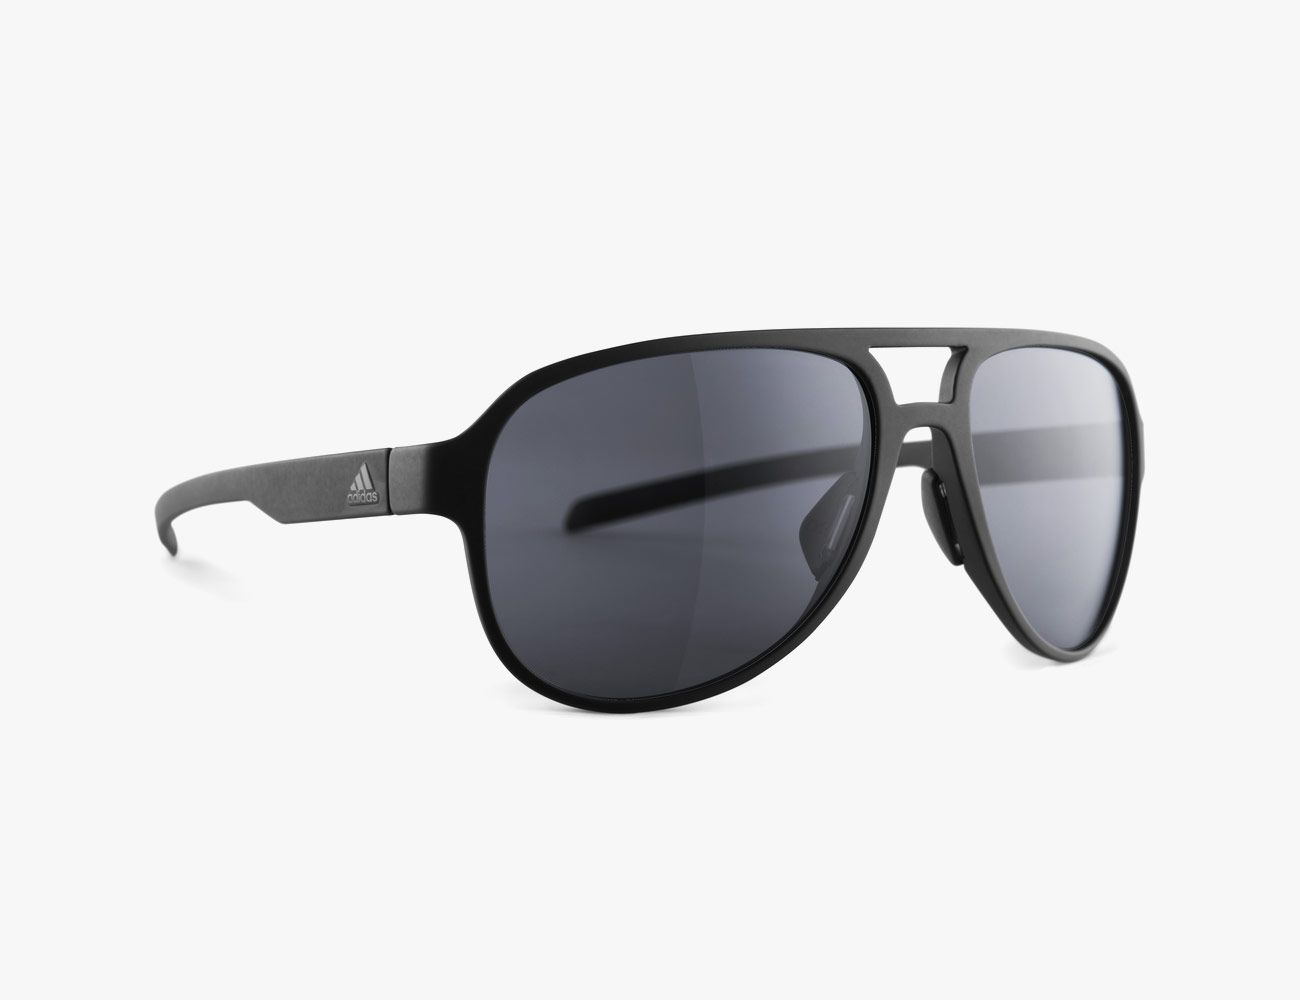 adidas running sunglasses sale